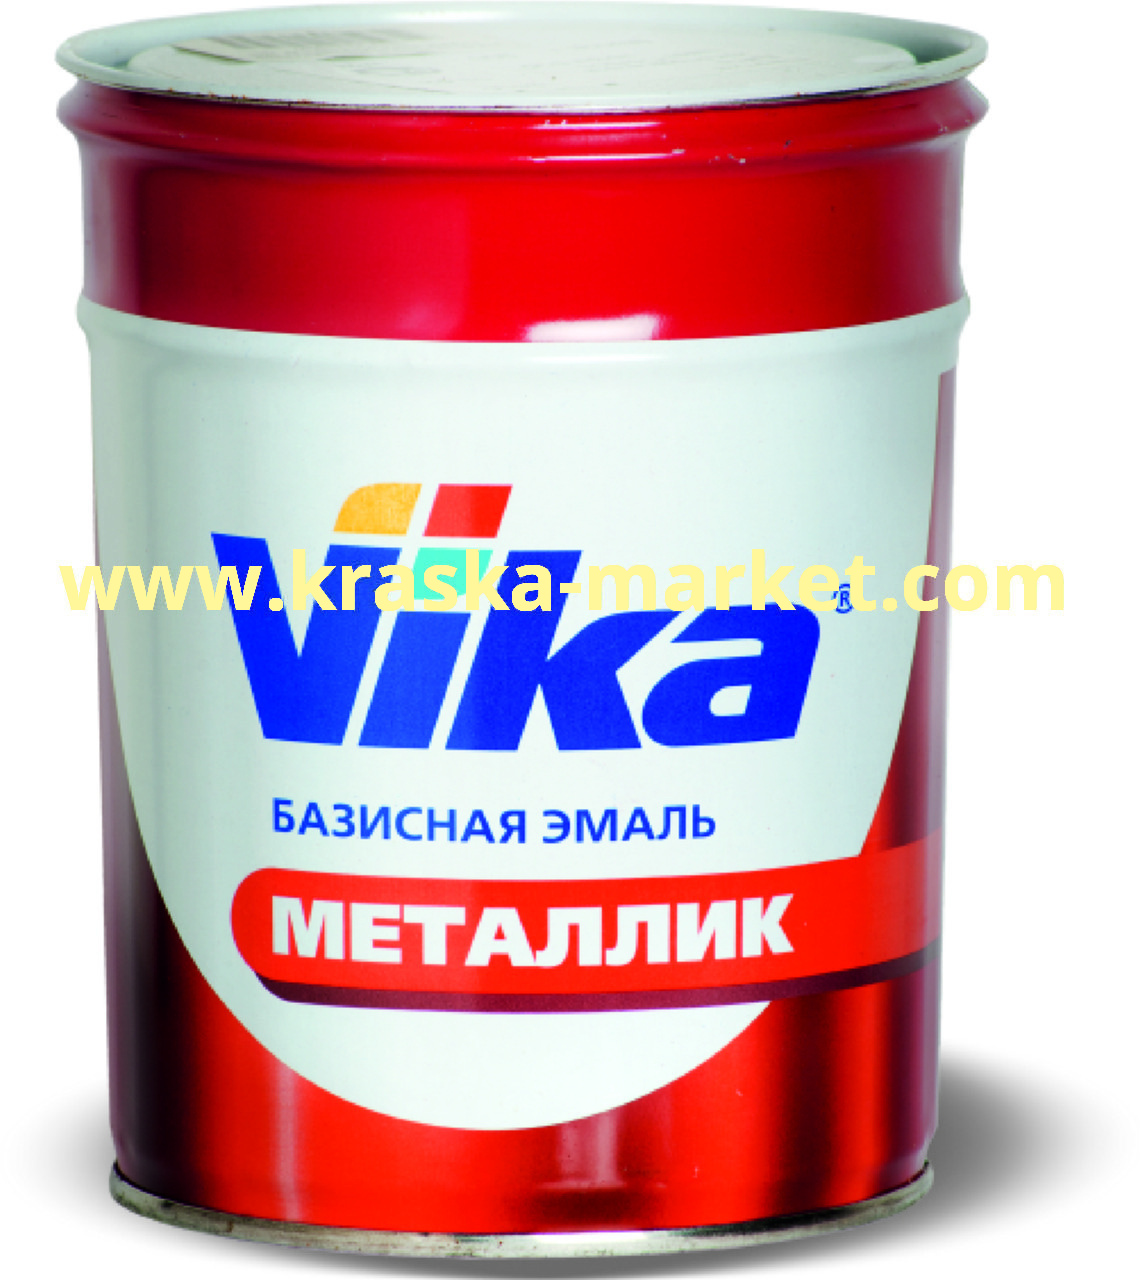 Базовая автоэмаль металлик, цвет: chevrolet red rock (70U). Упаковка: 0,9кг. Торговая марка: Вика.